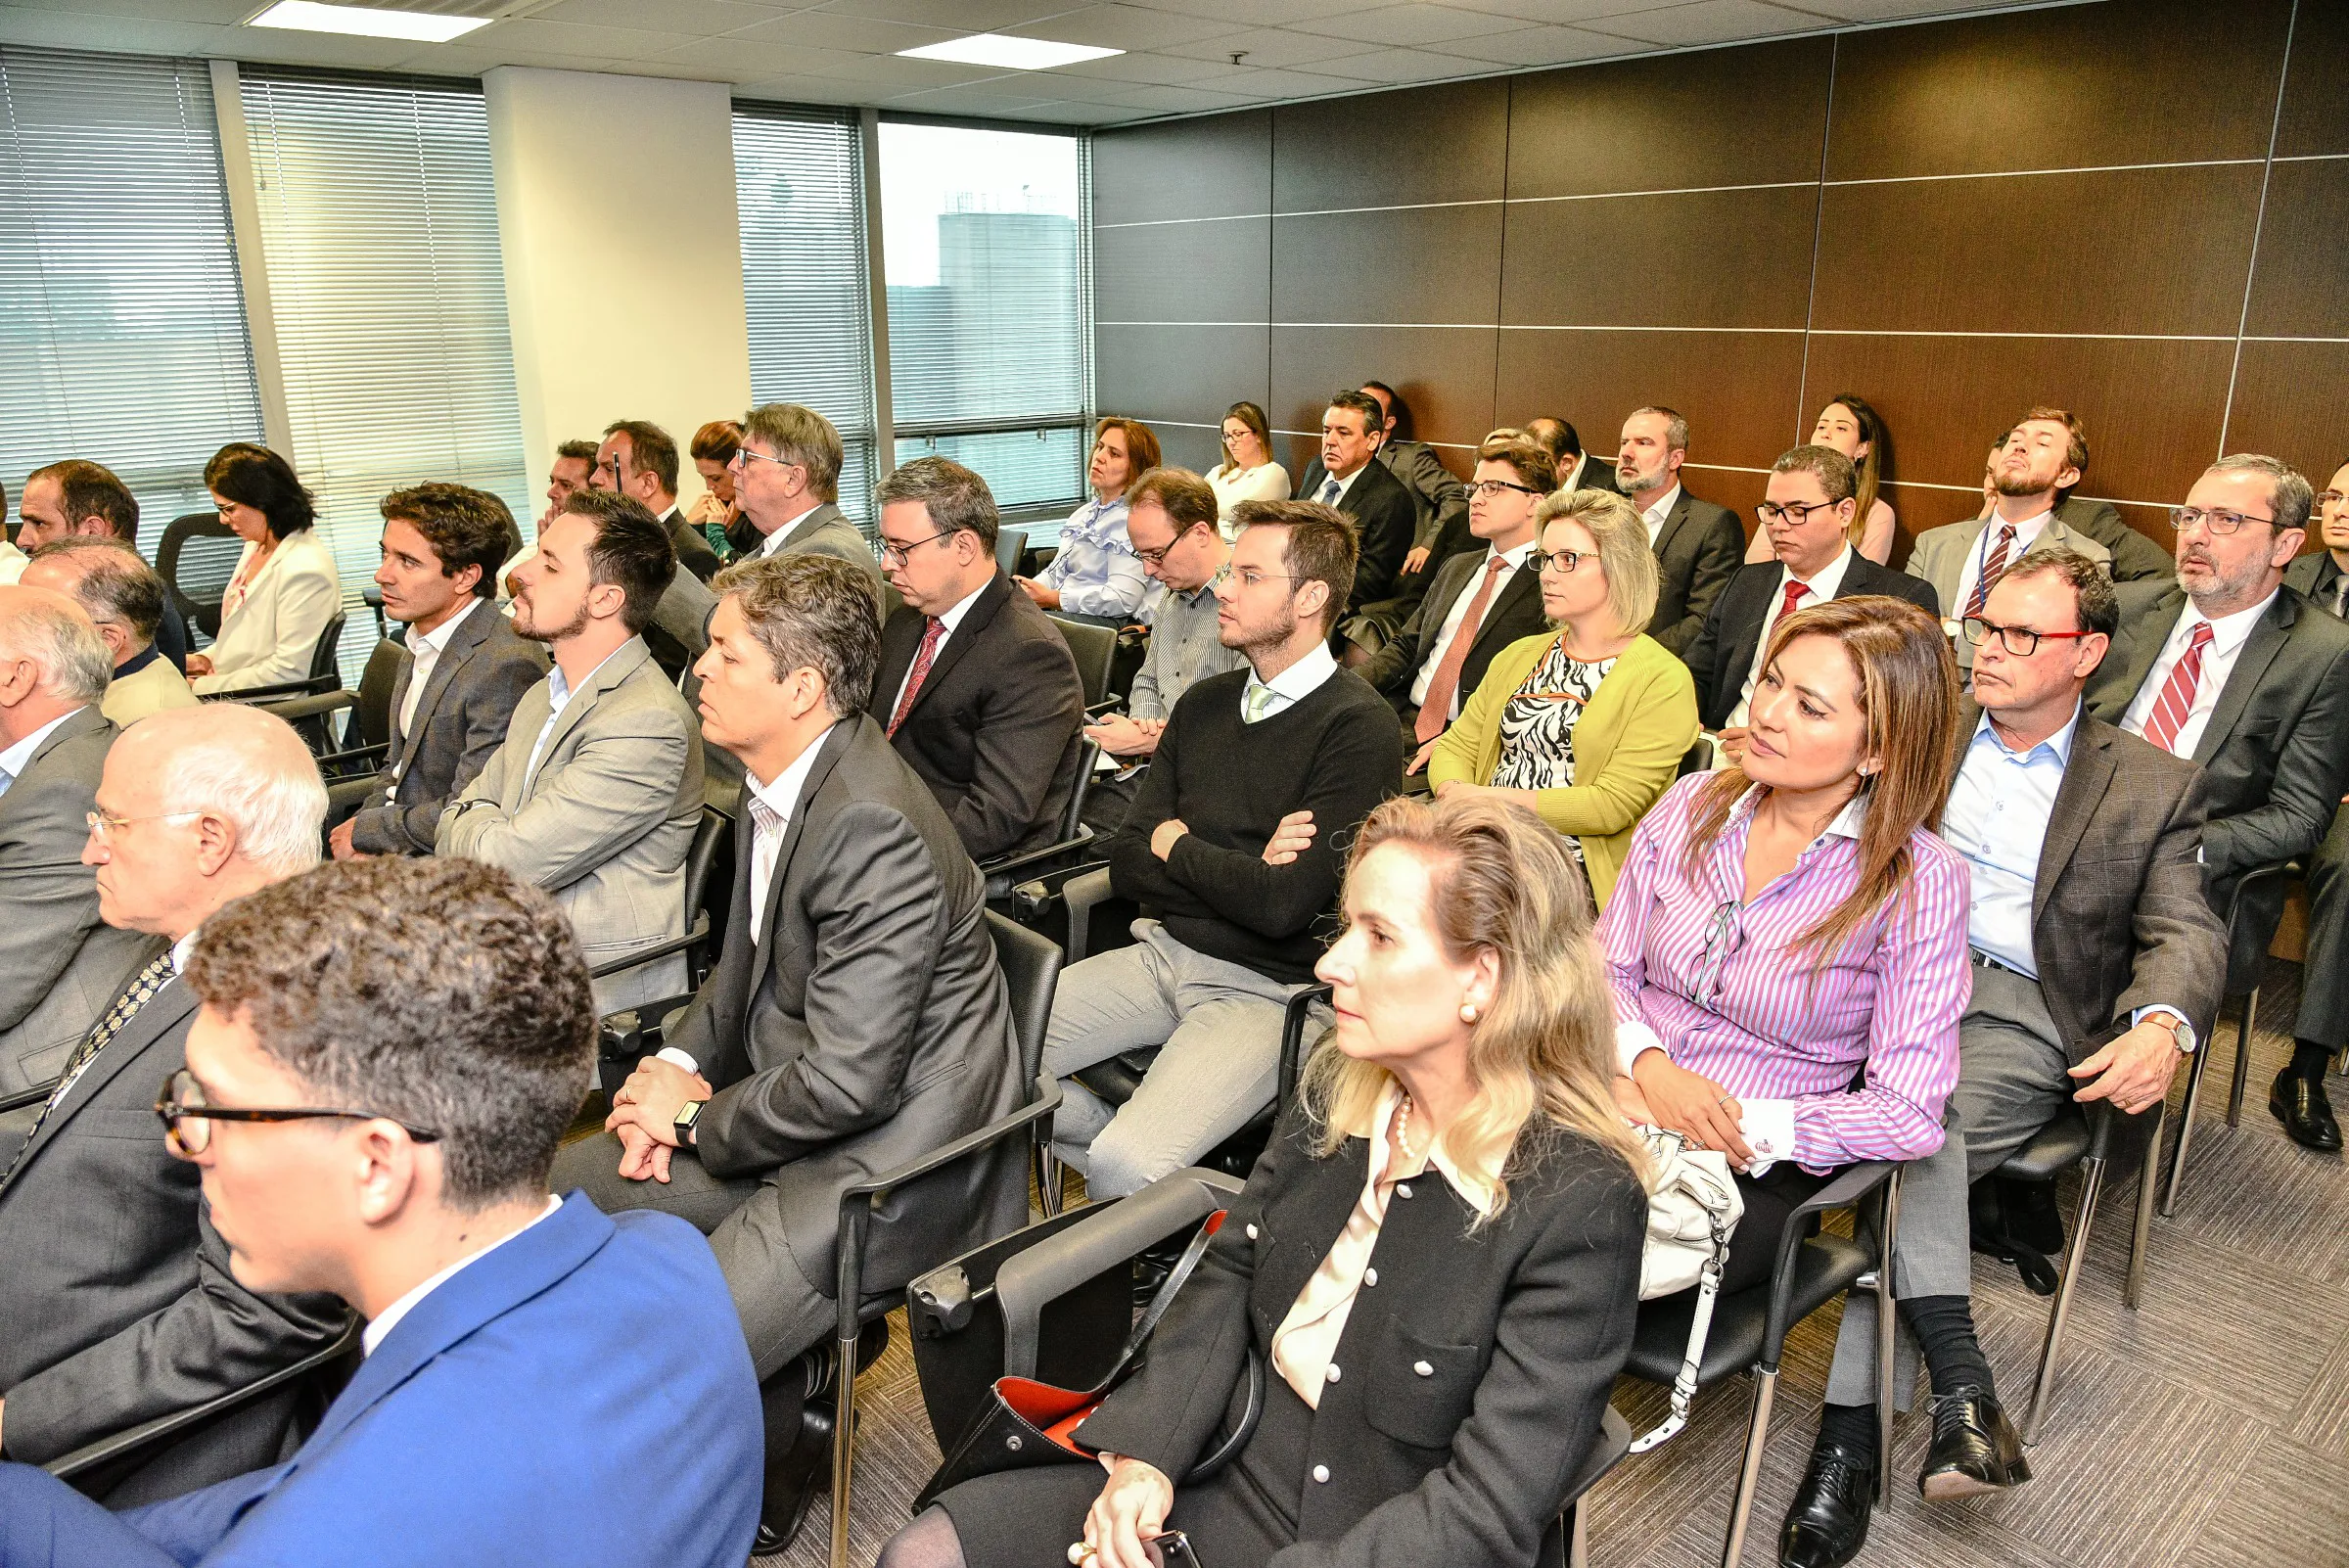 Encontro com o TCU reúne mais de 50 convidados em São Paulo